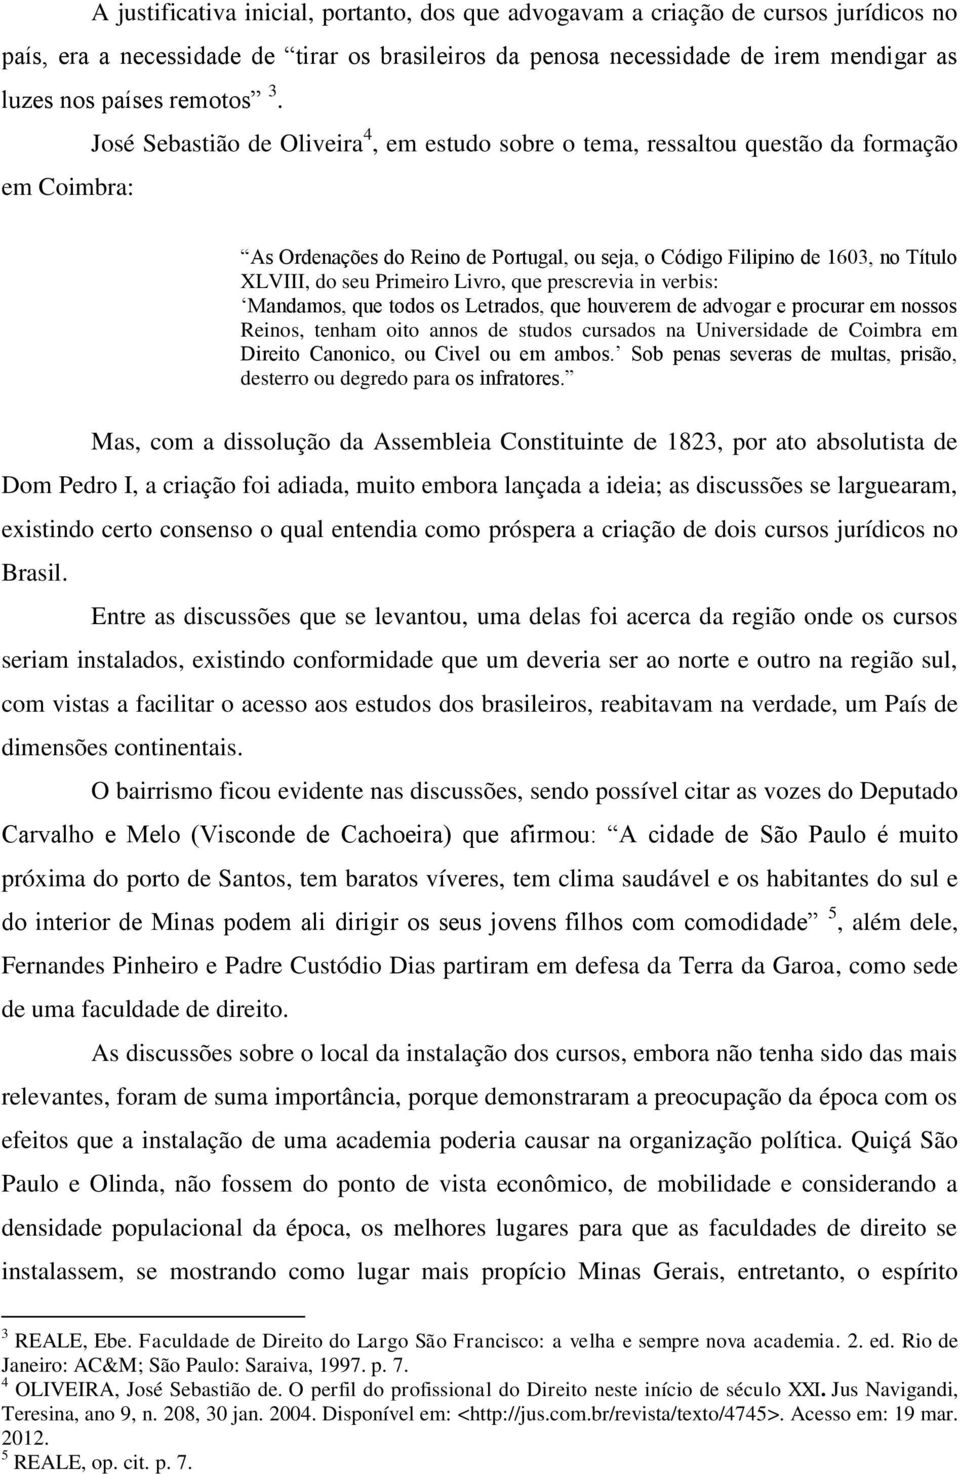 José Sebastião de Oliveira 4, em estudo sobre o tema, ressaltou questão da formação em Coimbra: As Ordenações do Reino de Portugal, ou seja, o Código Filipino de 1603, no Título XLVIII, do seu